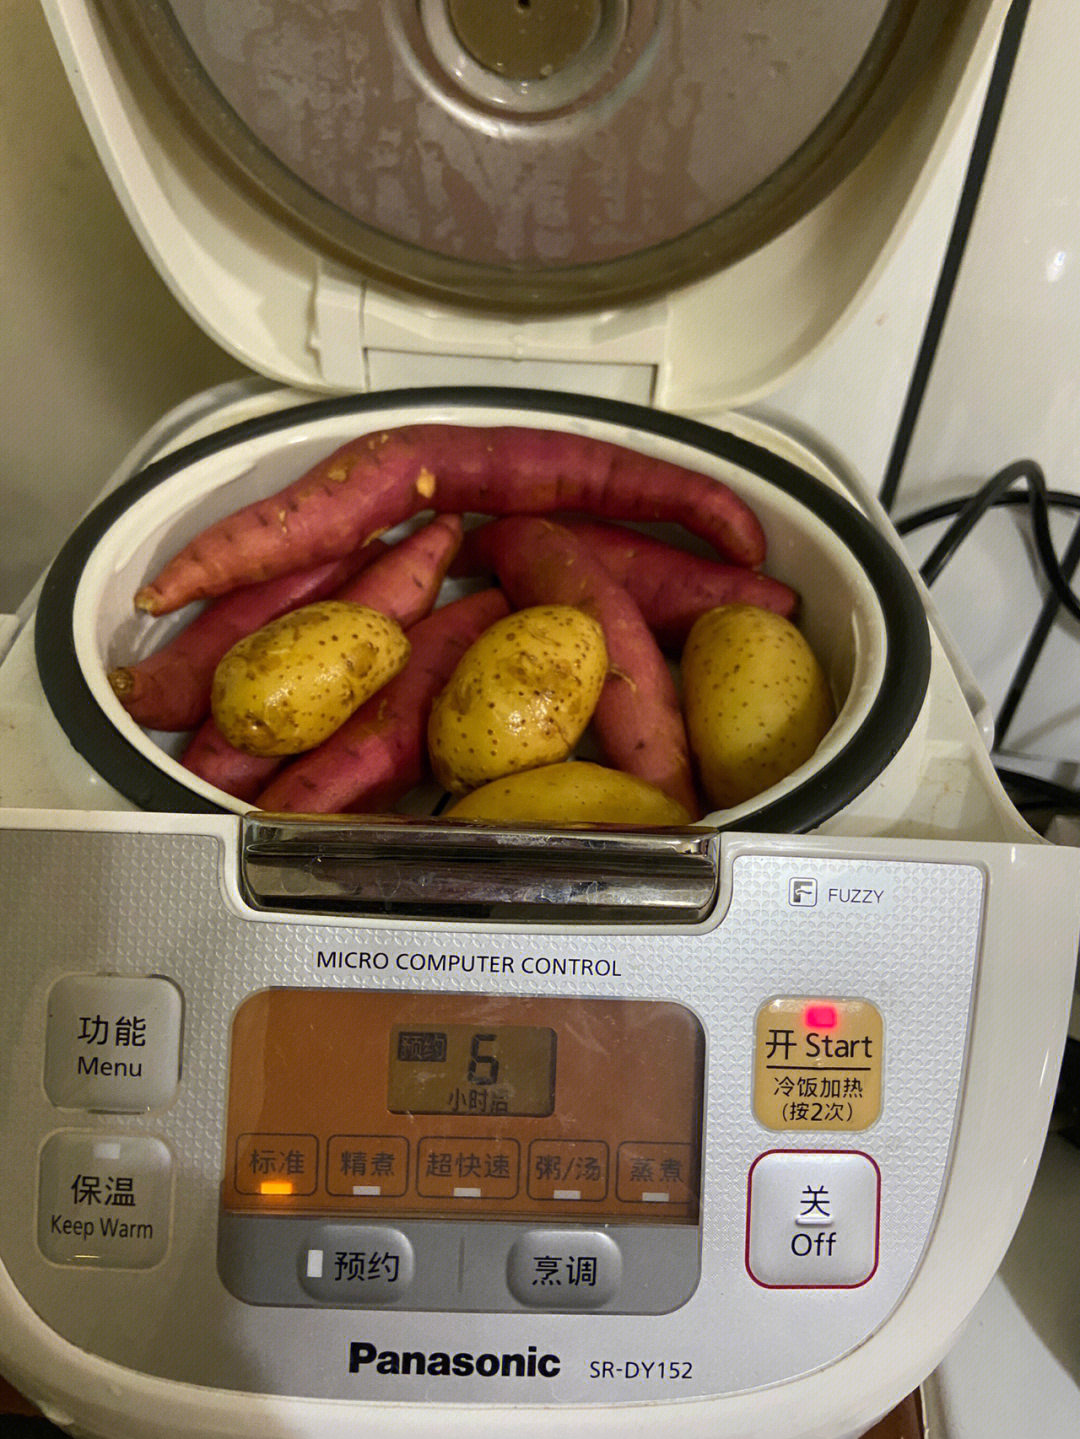 预约早餐蒸土豆08红薯松下电饭煲